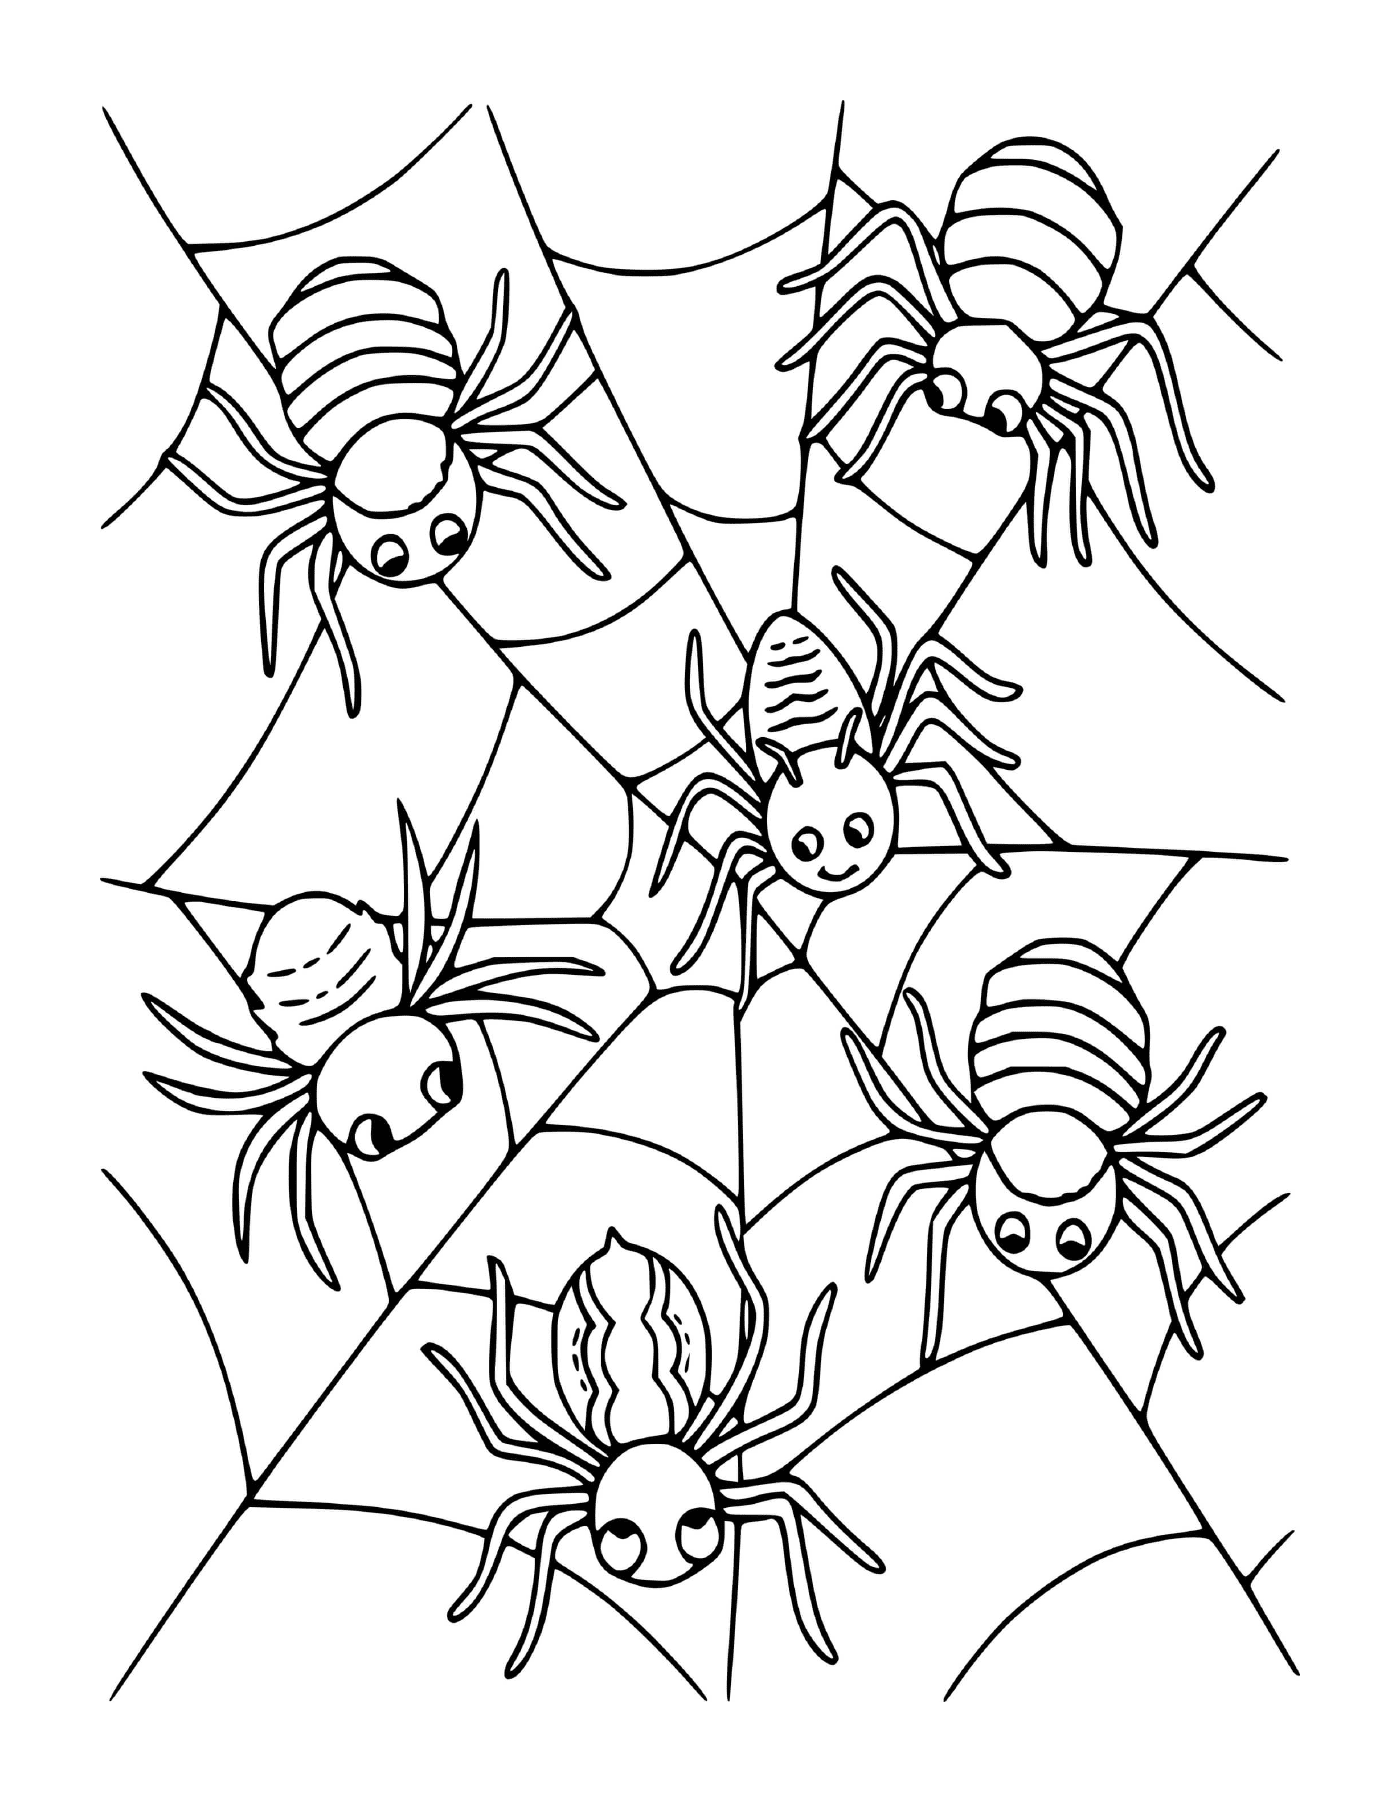  Группа из четырёх пауков, сидящих в сети 